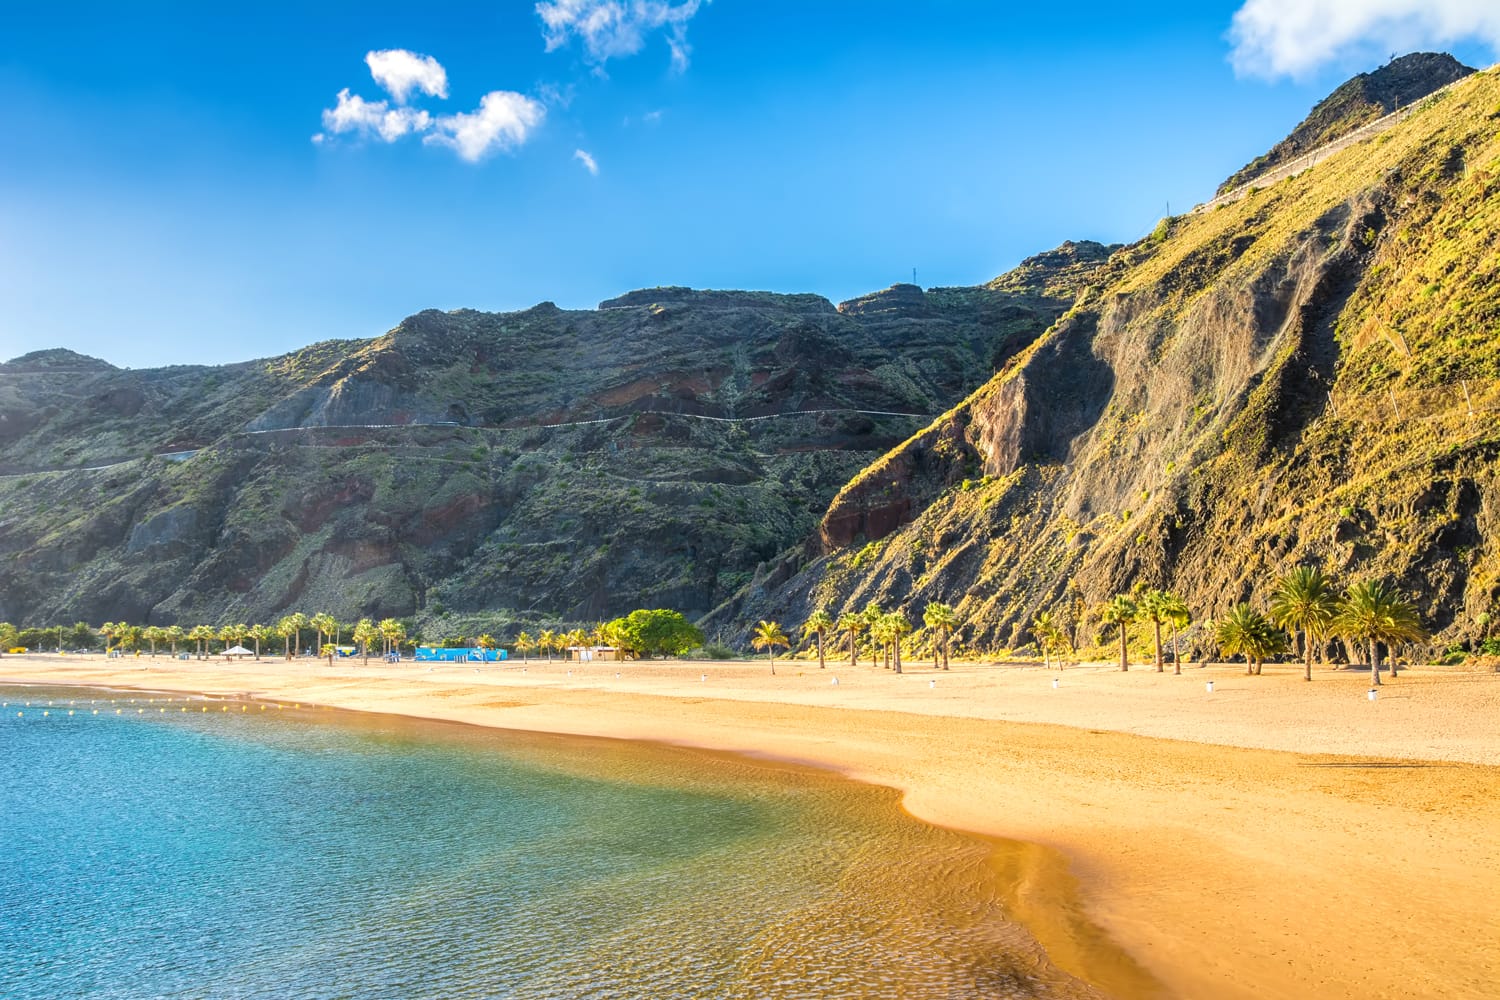 Splendida vista della spiaggia las Teresitas con sabbia gialla.  Località: Santa Cruz de Tenerife, Tenerife, Isole Canarie.